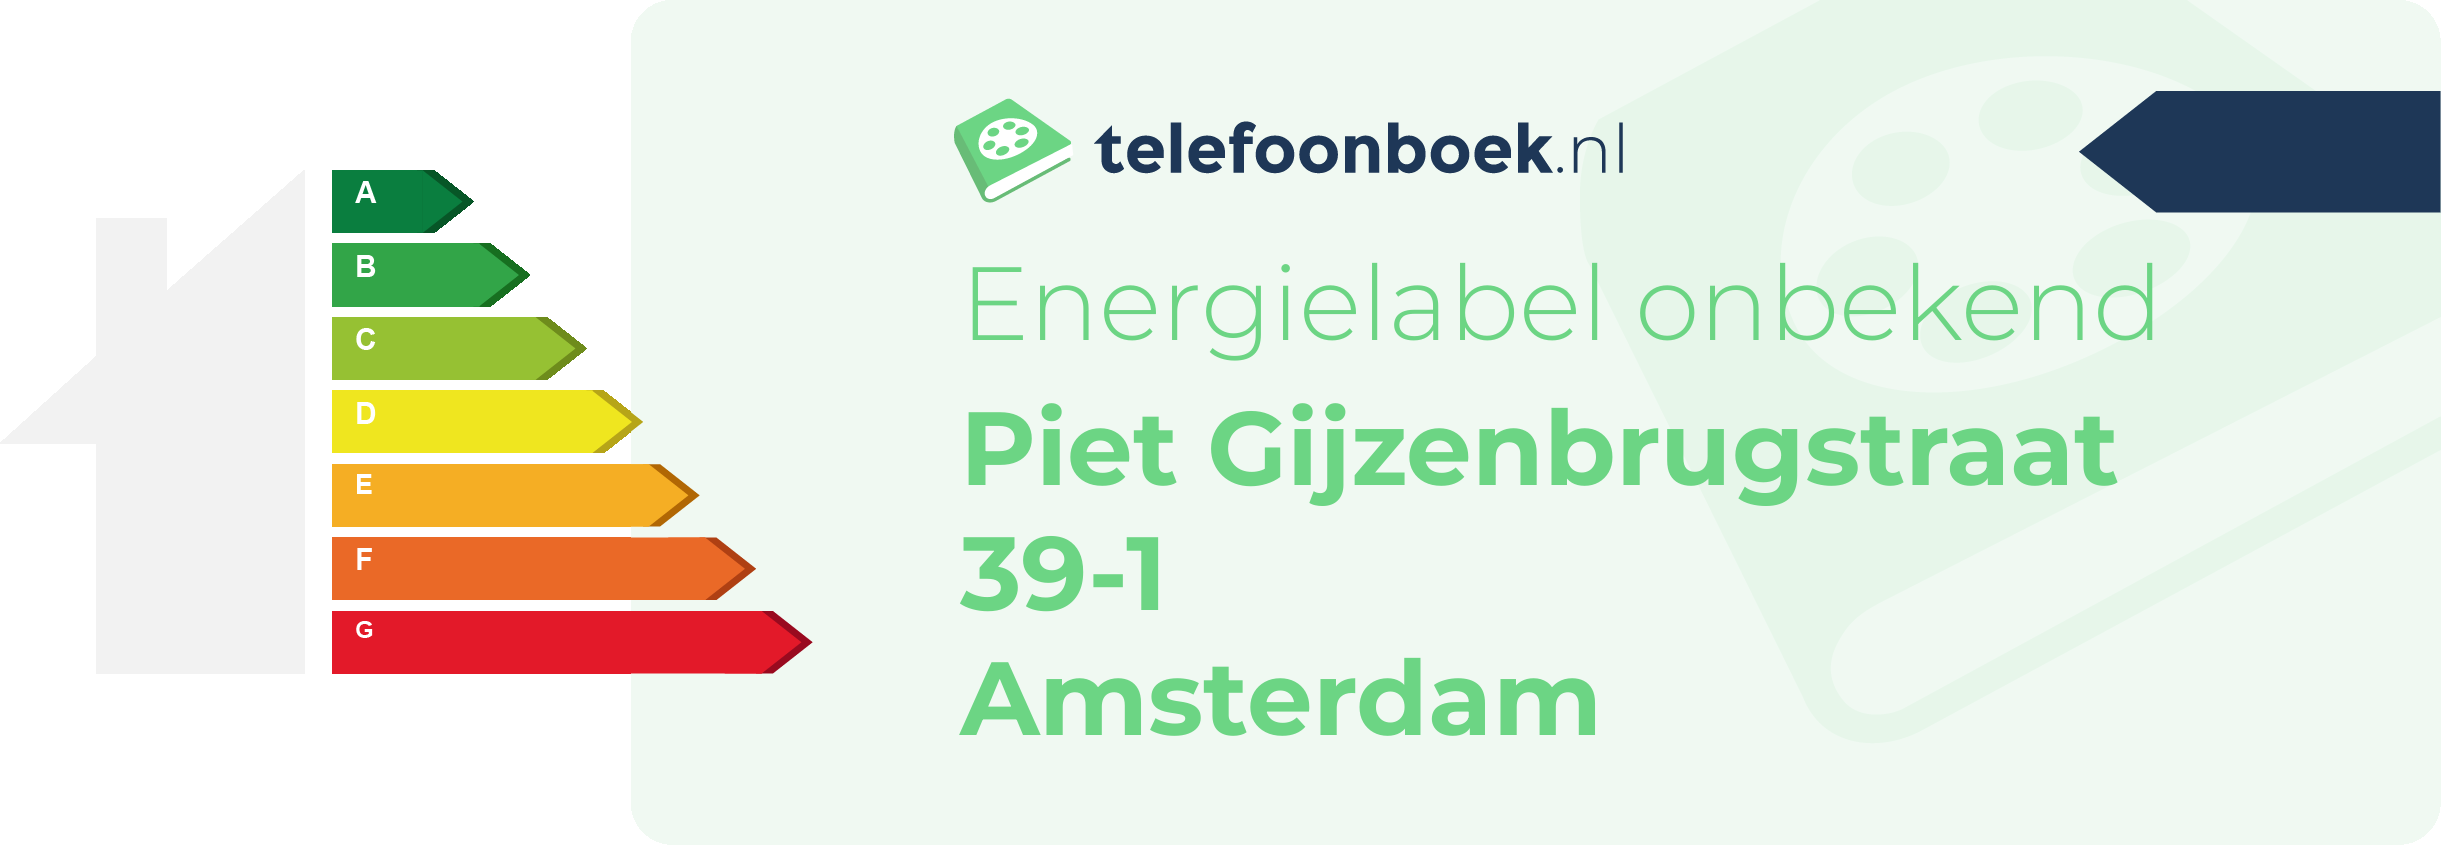 Energielabel Piet Gijzenbrugstraat 39-1 Amsterdam